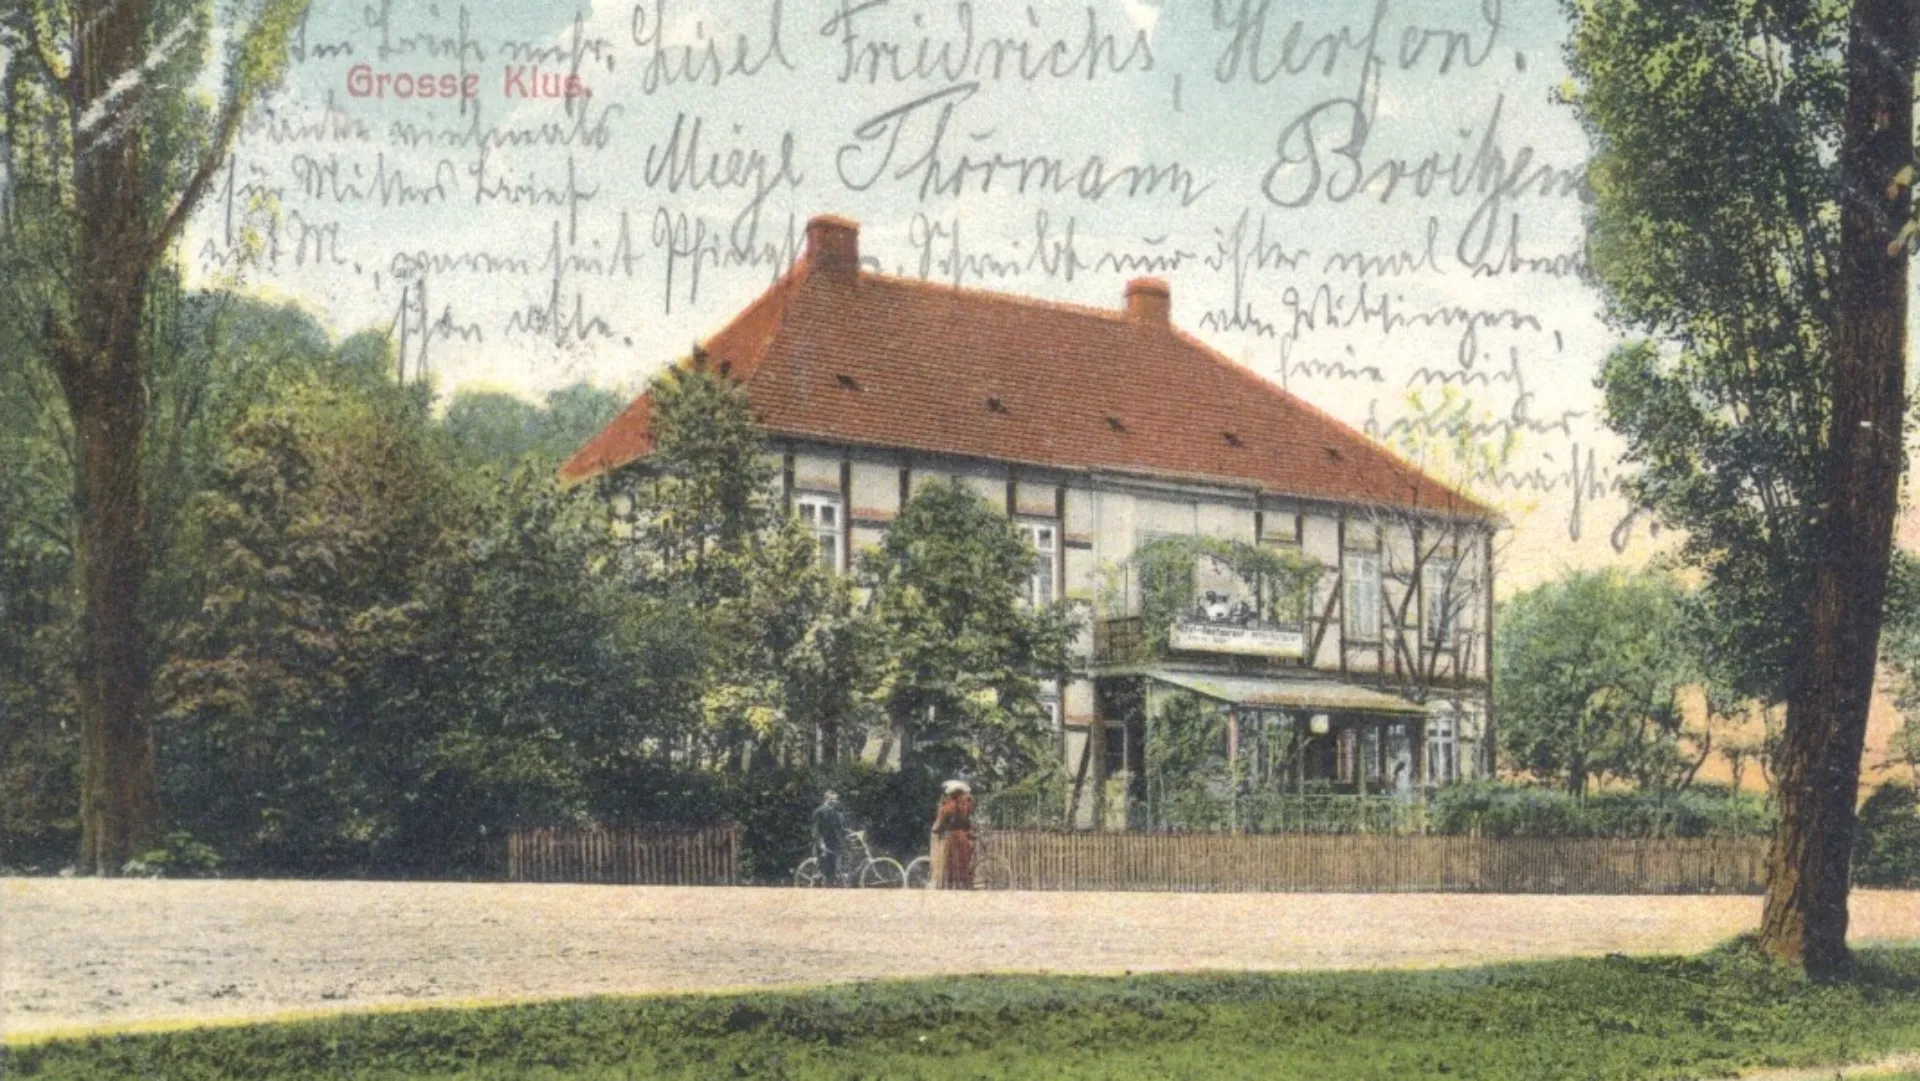 Grosse_Klus_Hotel_und_Restaurant_anno_1880